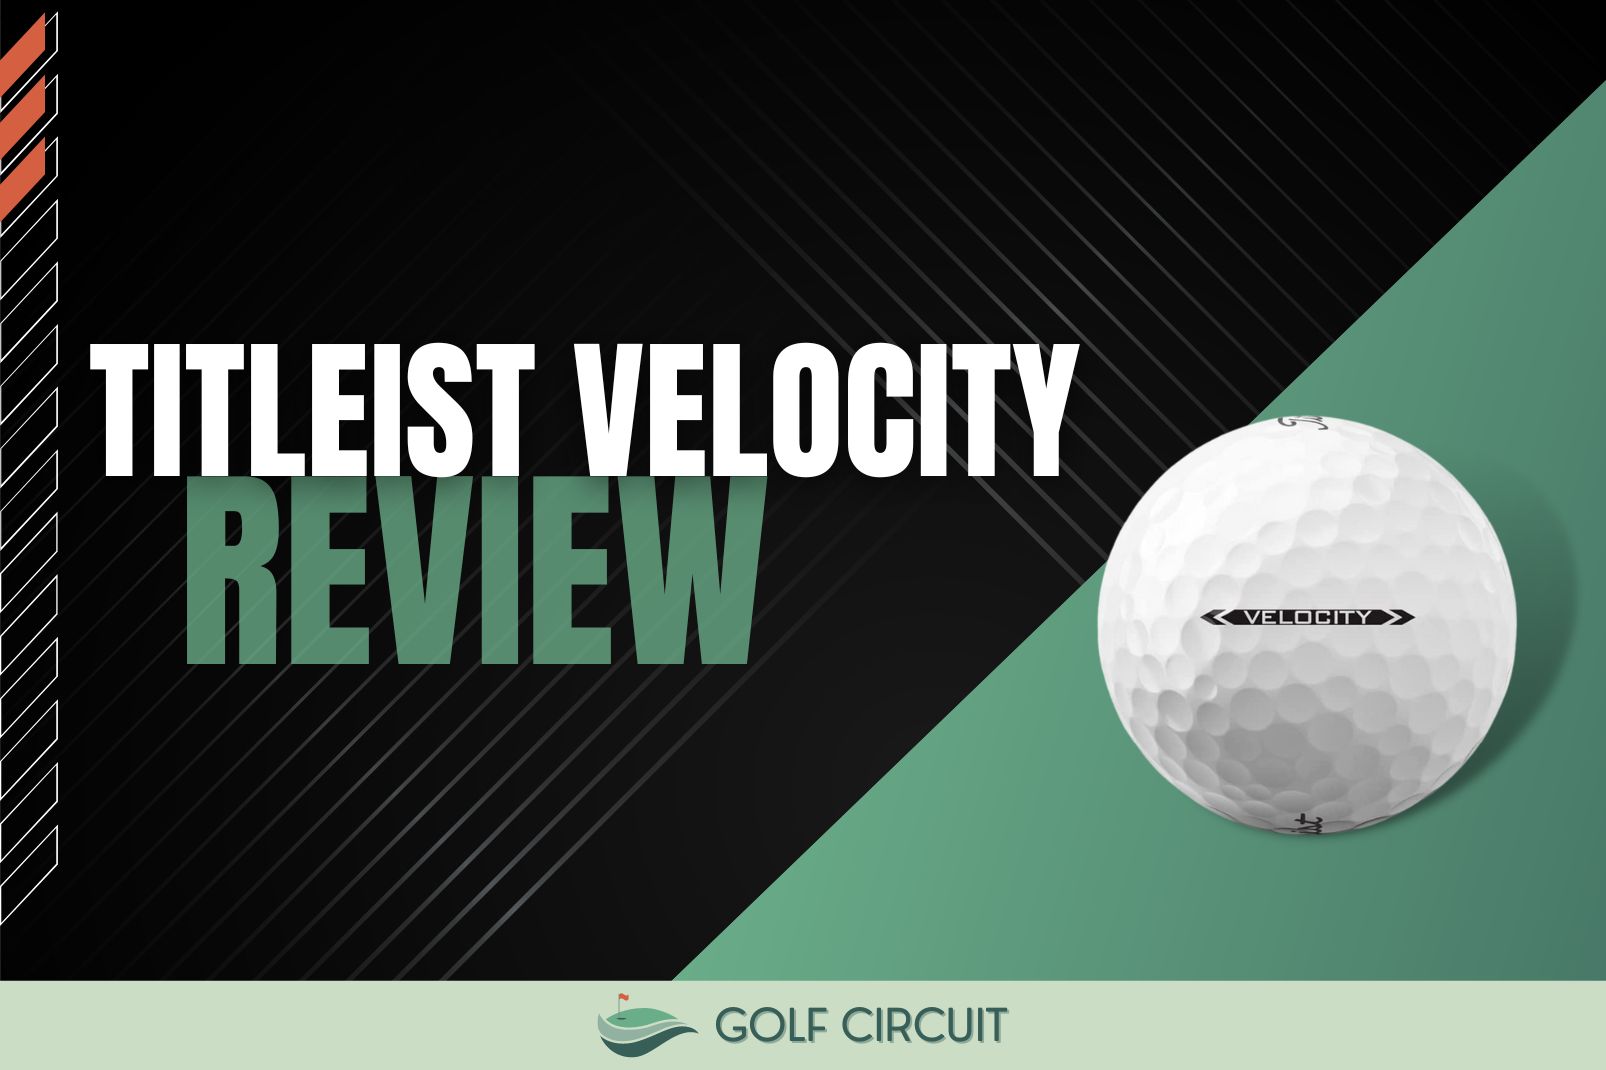 titleist velocity golf ball review